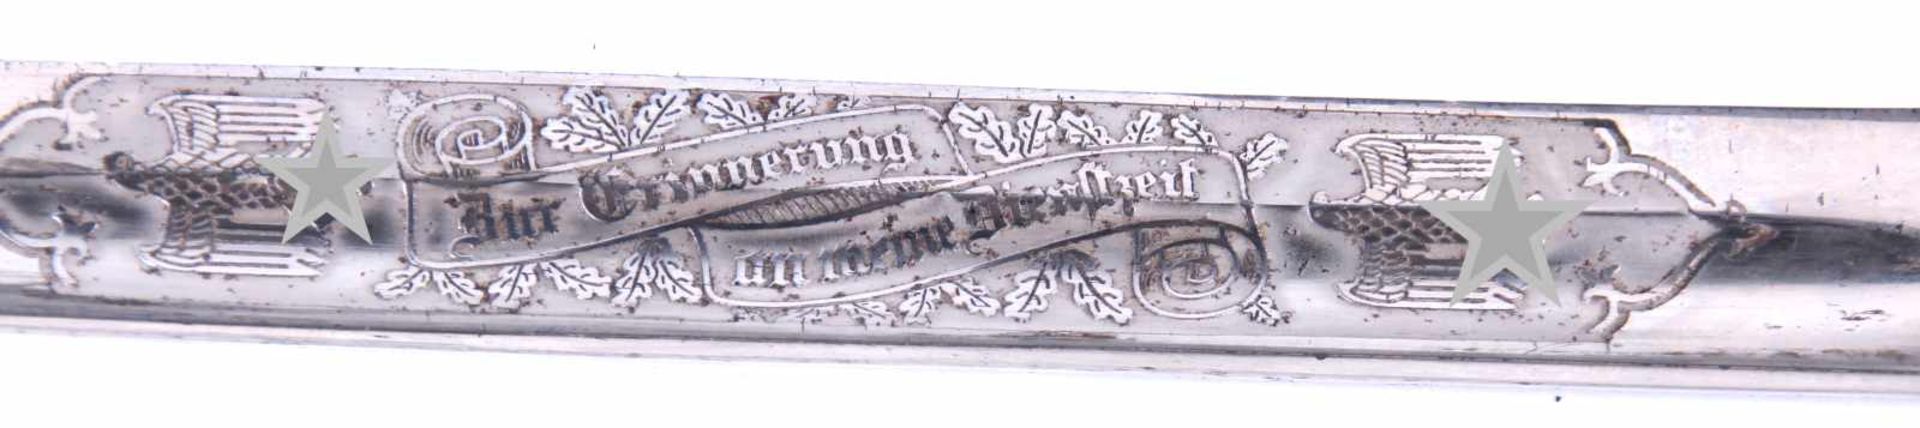 Baïonnette de sortie à lame gravée de la Heer. Pièces en métal nickelées. Lame complète dans sa - Bild 2 aus 4